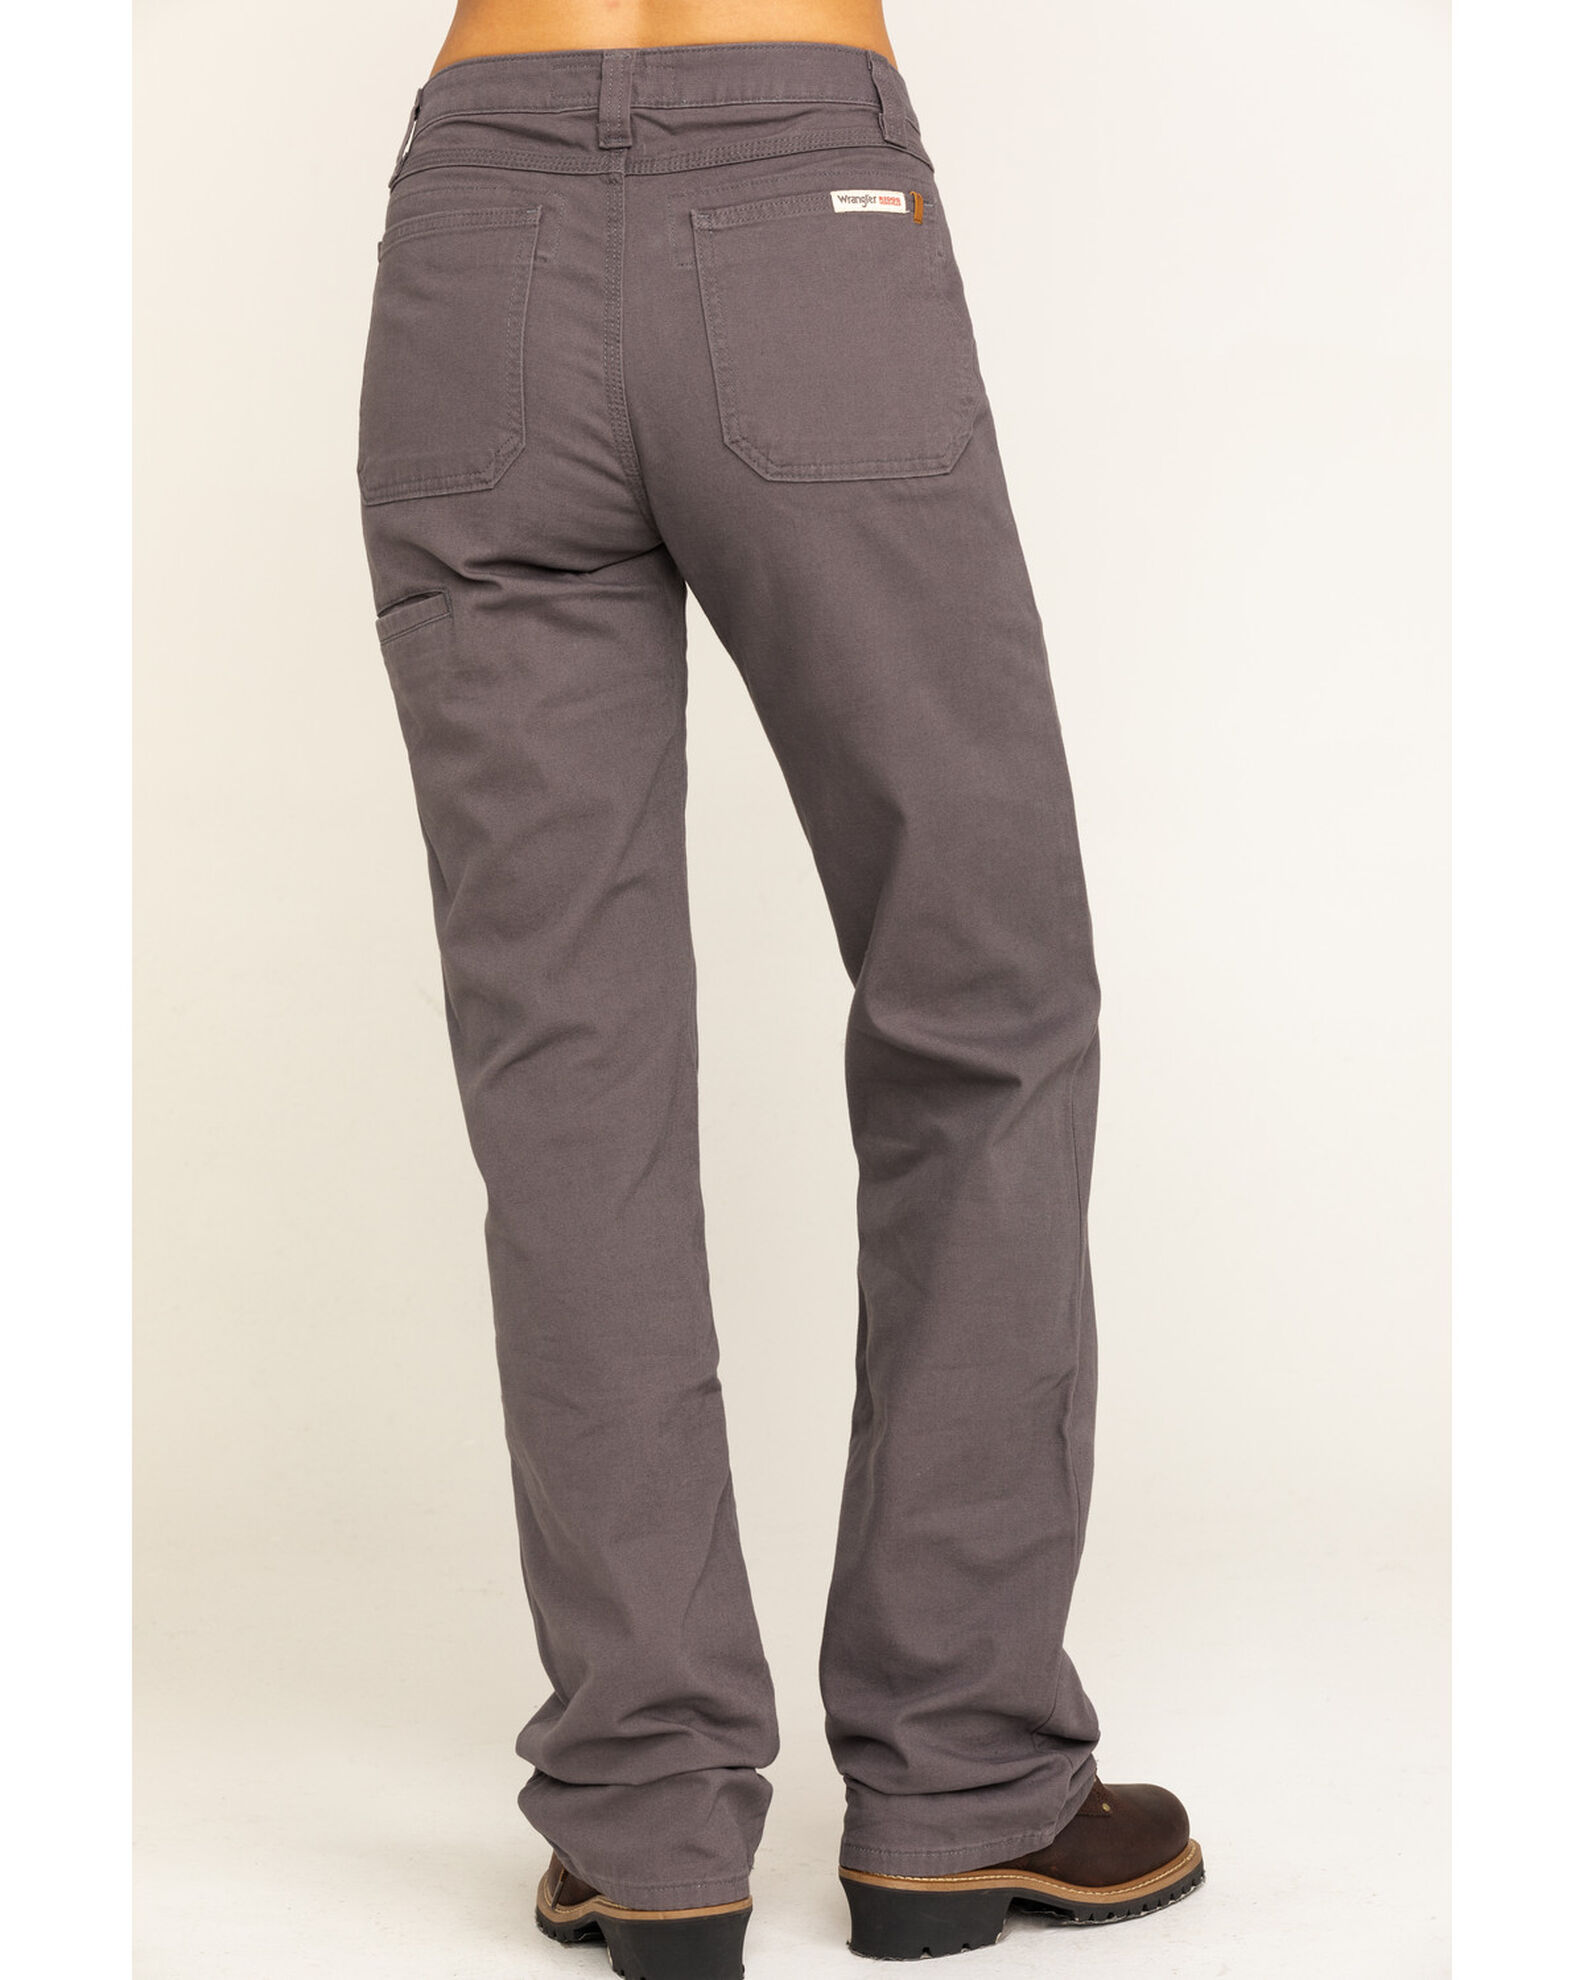 Wrangler Riggs Women's Advanced Comfort Work Pants | Sheplers